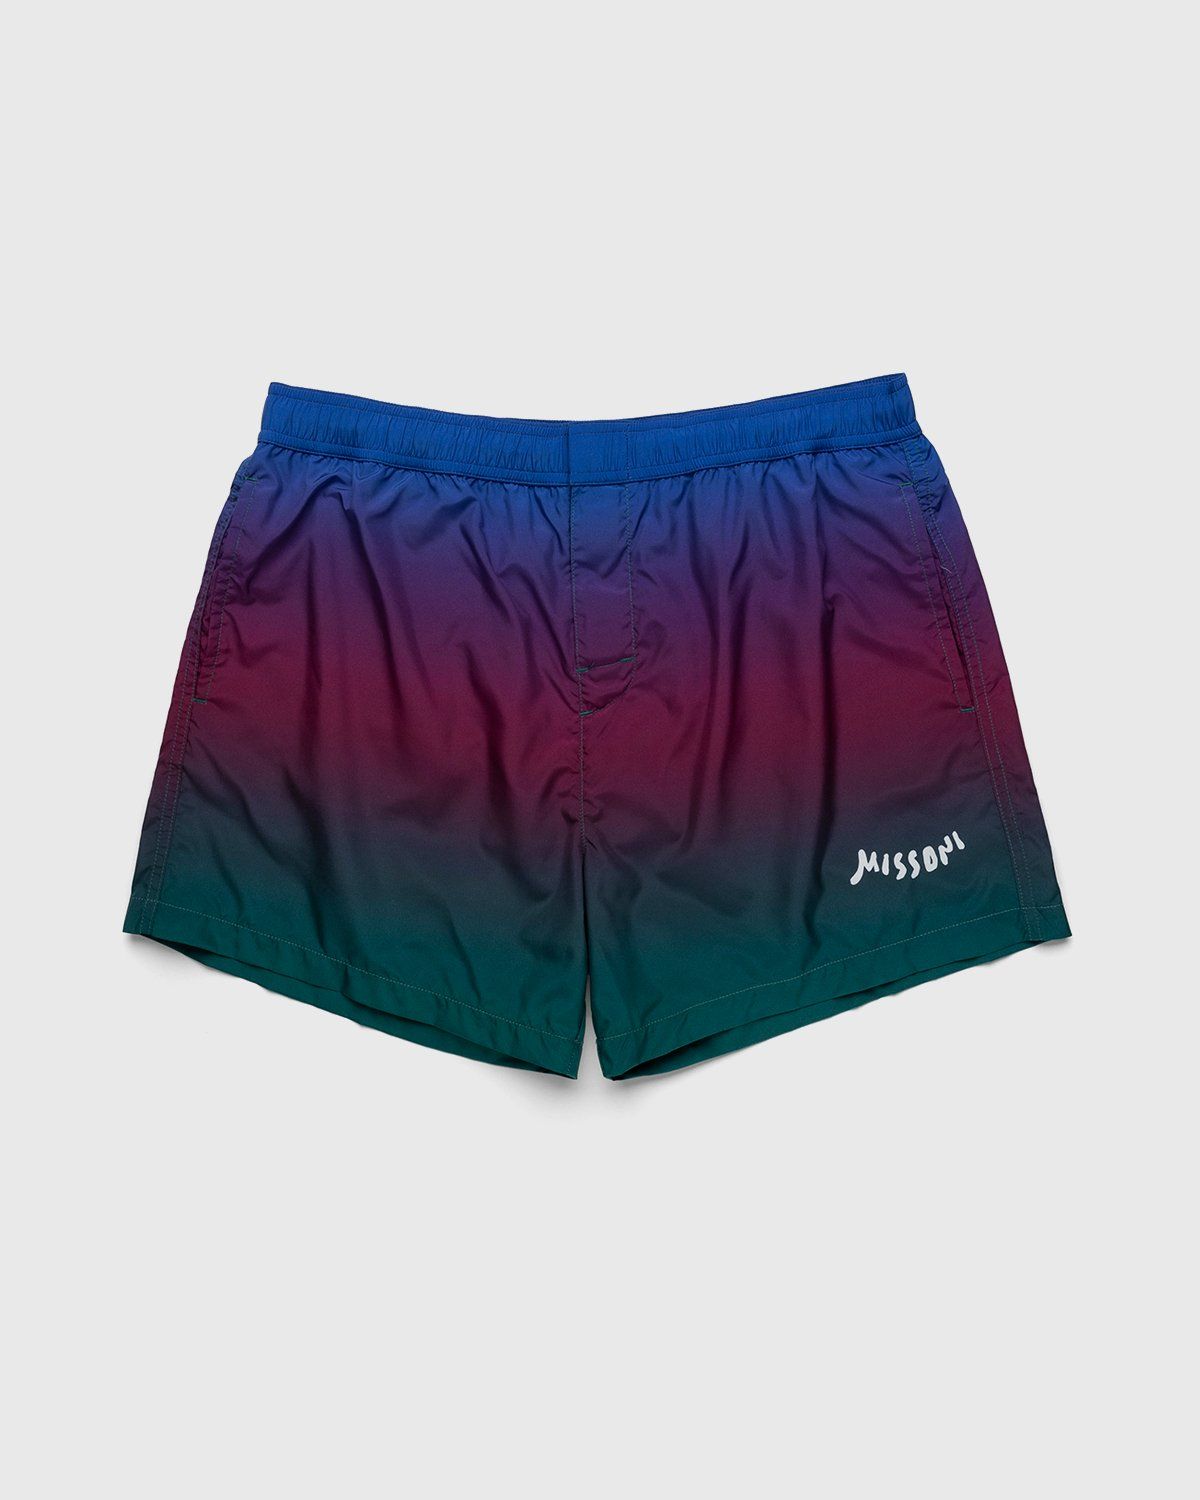 Missoni – Degrade Print Swim Shorts Blue - Shorts - Blue - Image 1